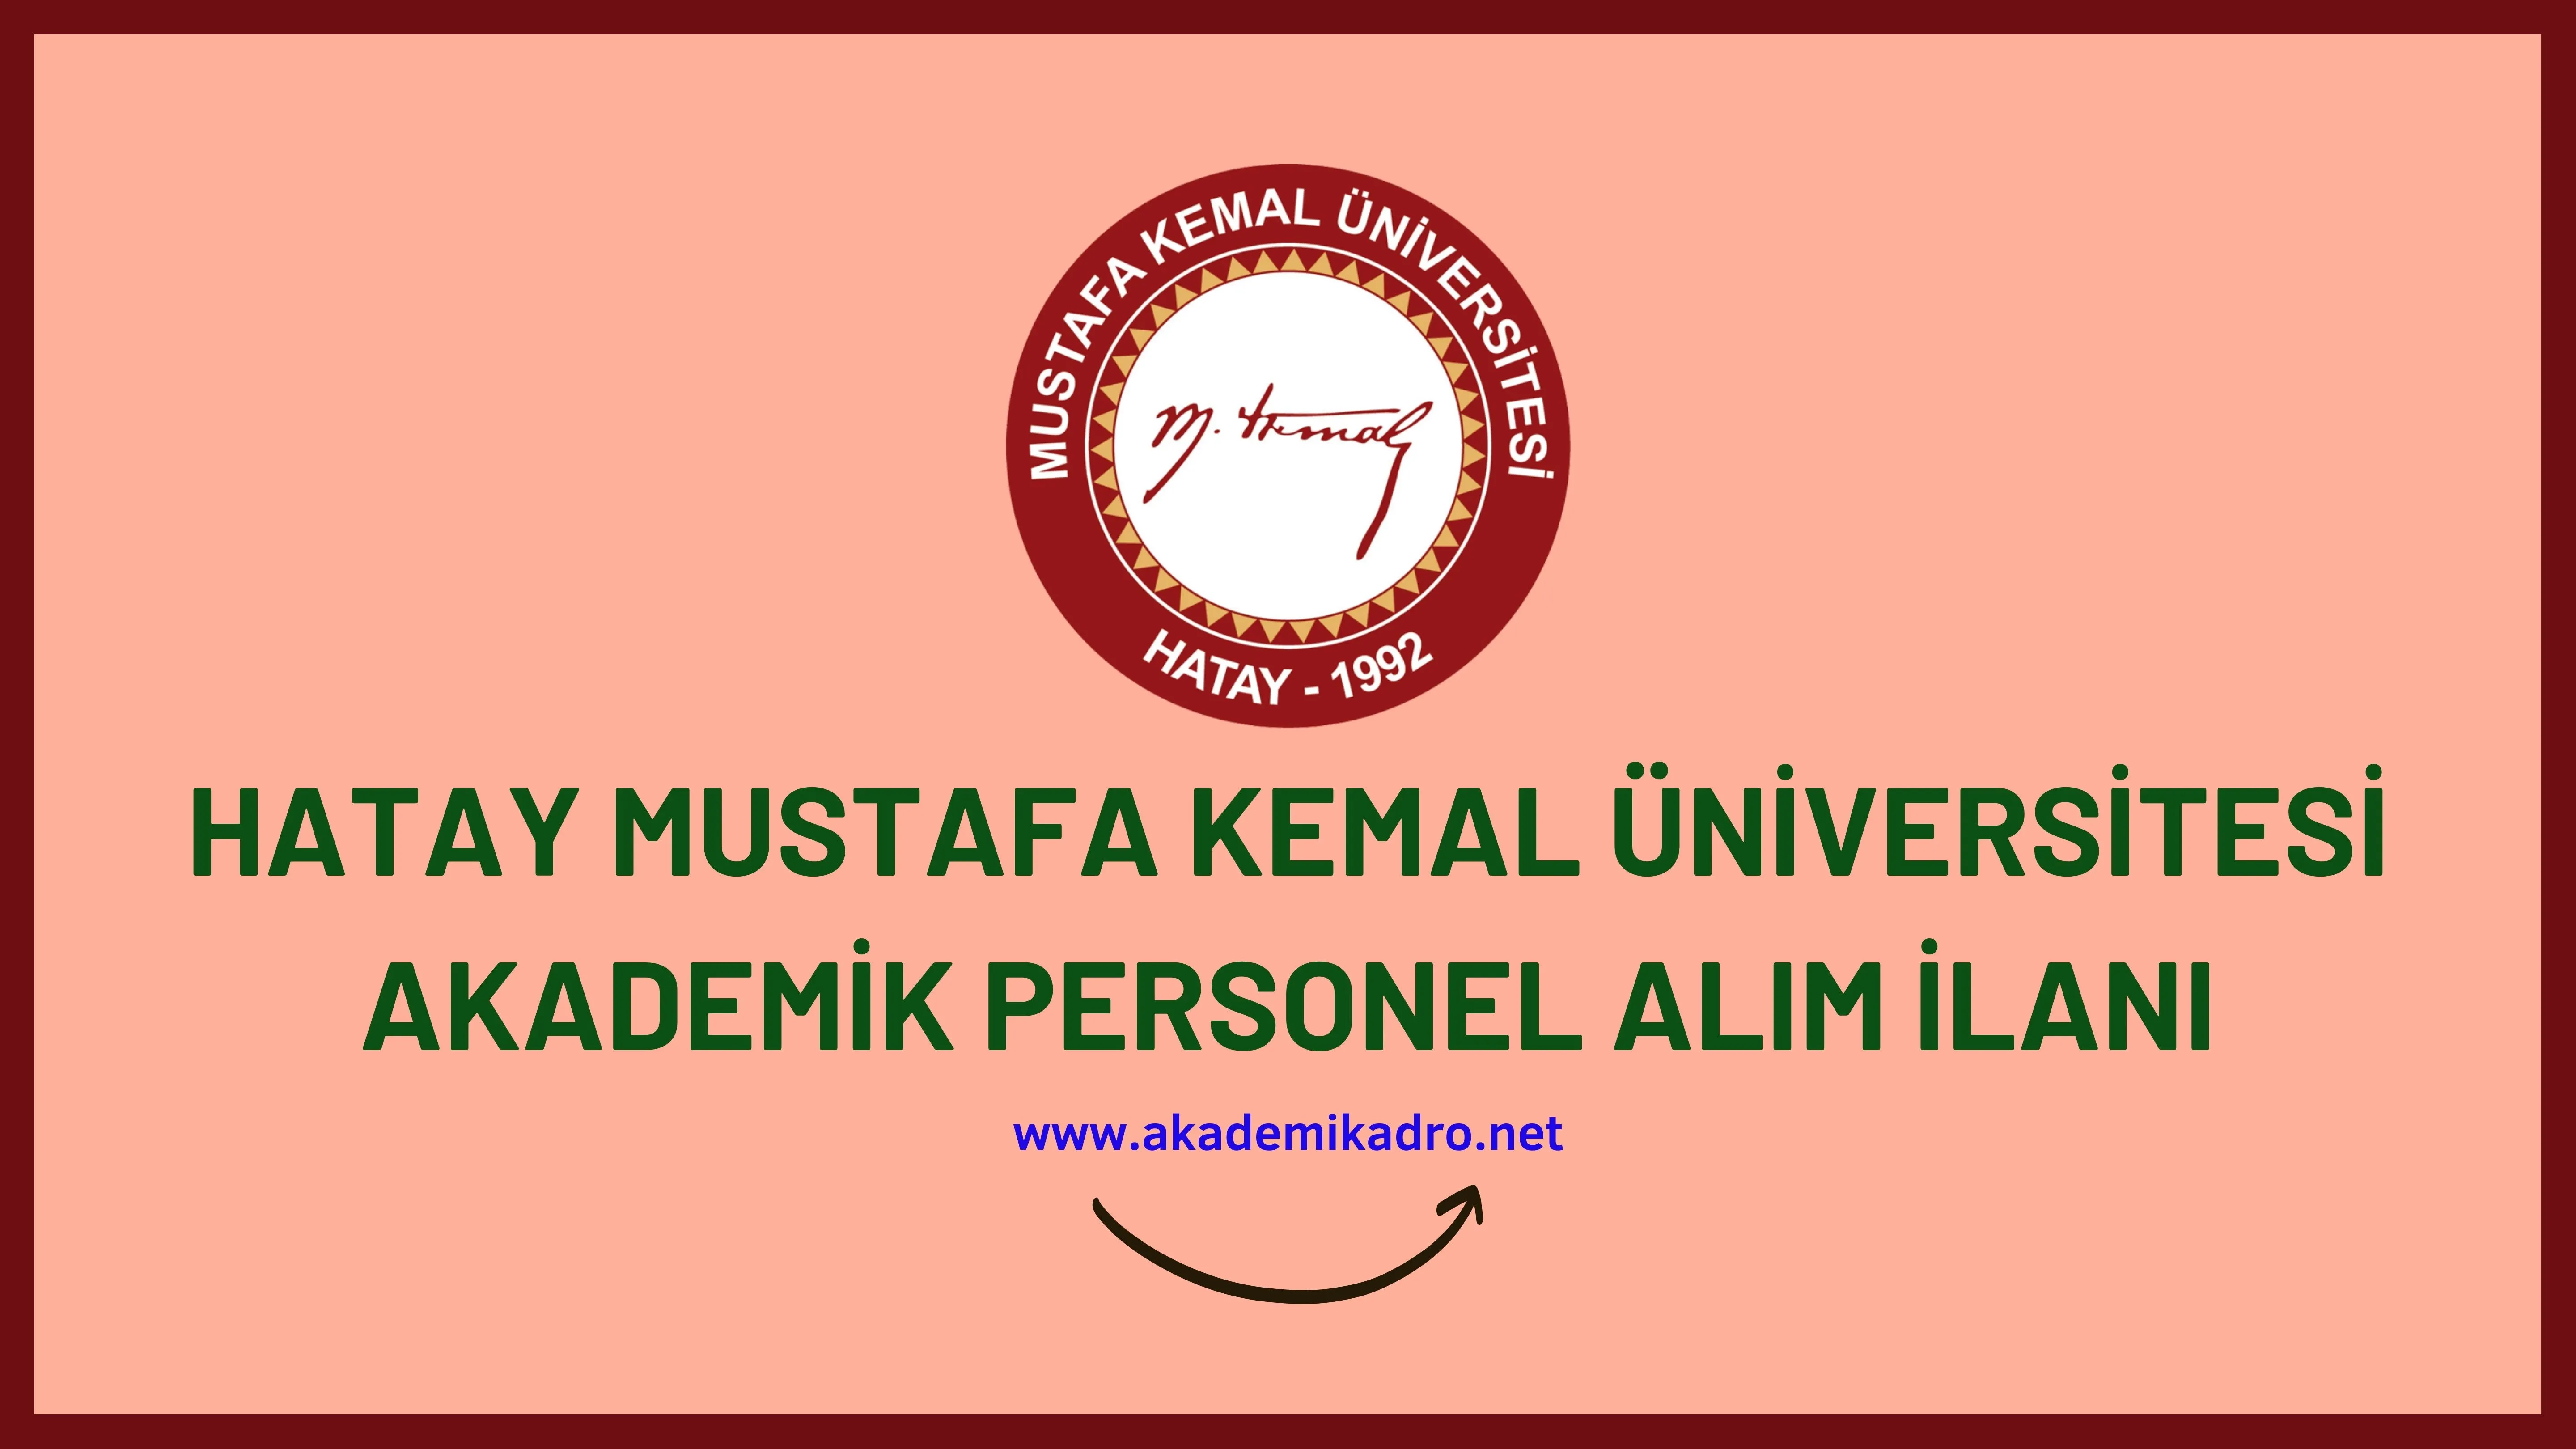 Hatay Mustafa Kemal Üniversitesi birçok alandan 49 Akademik personel alacak.